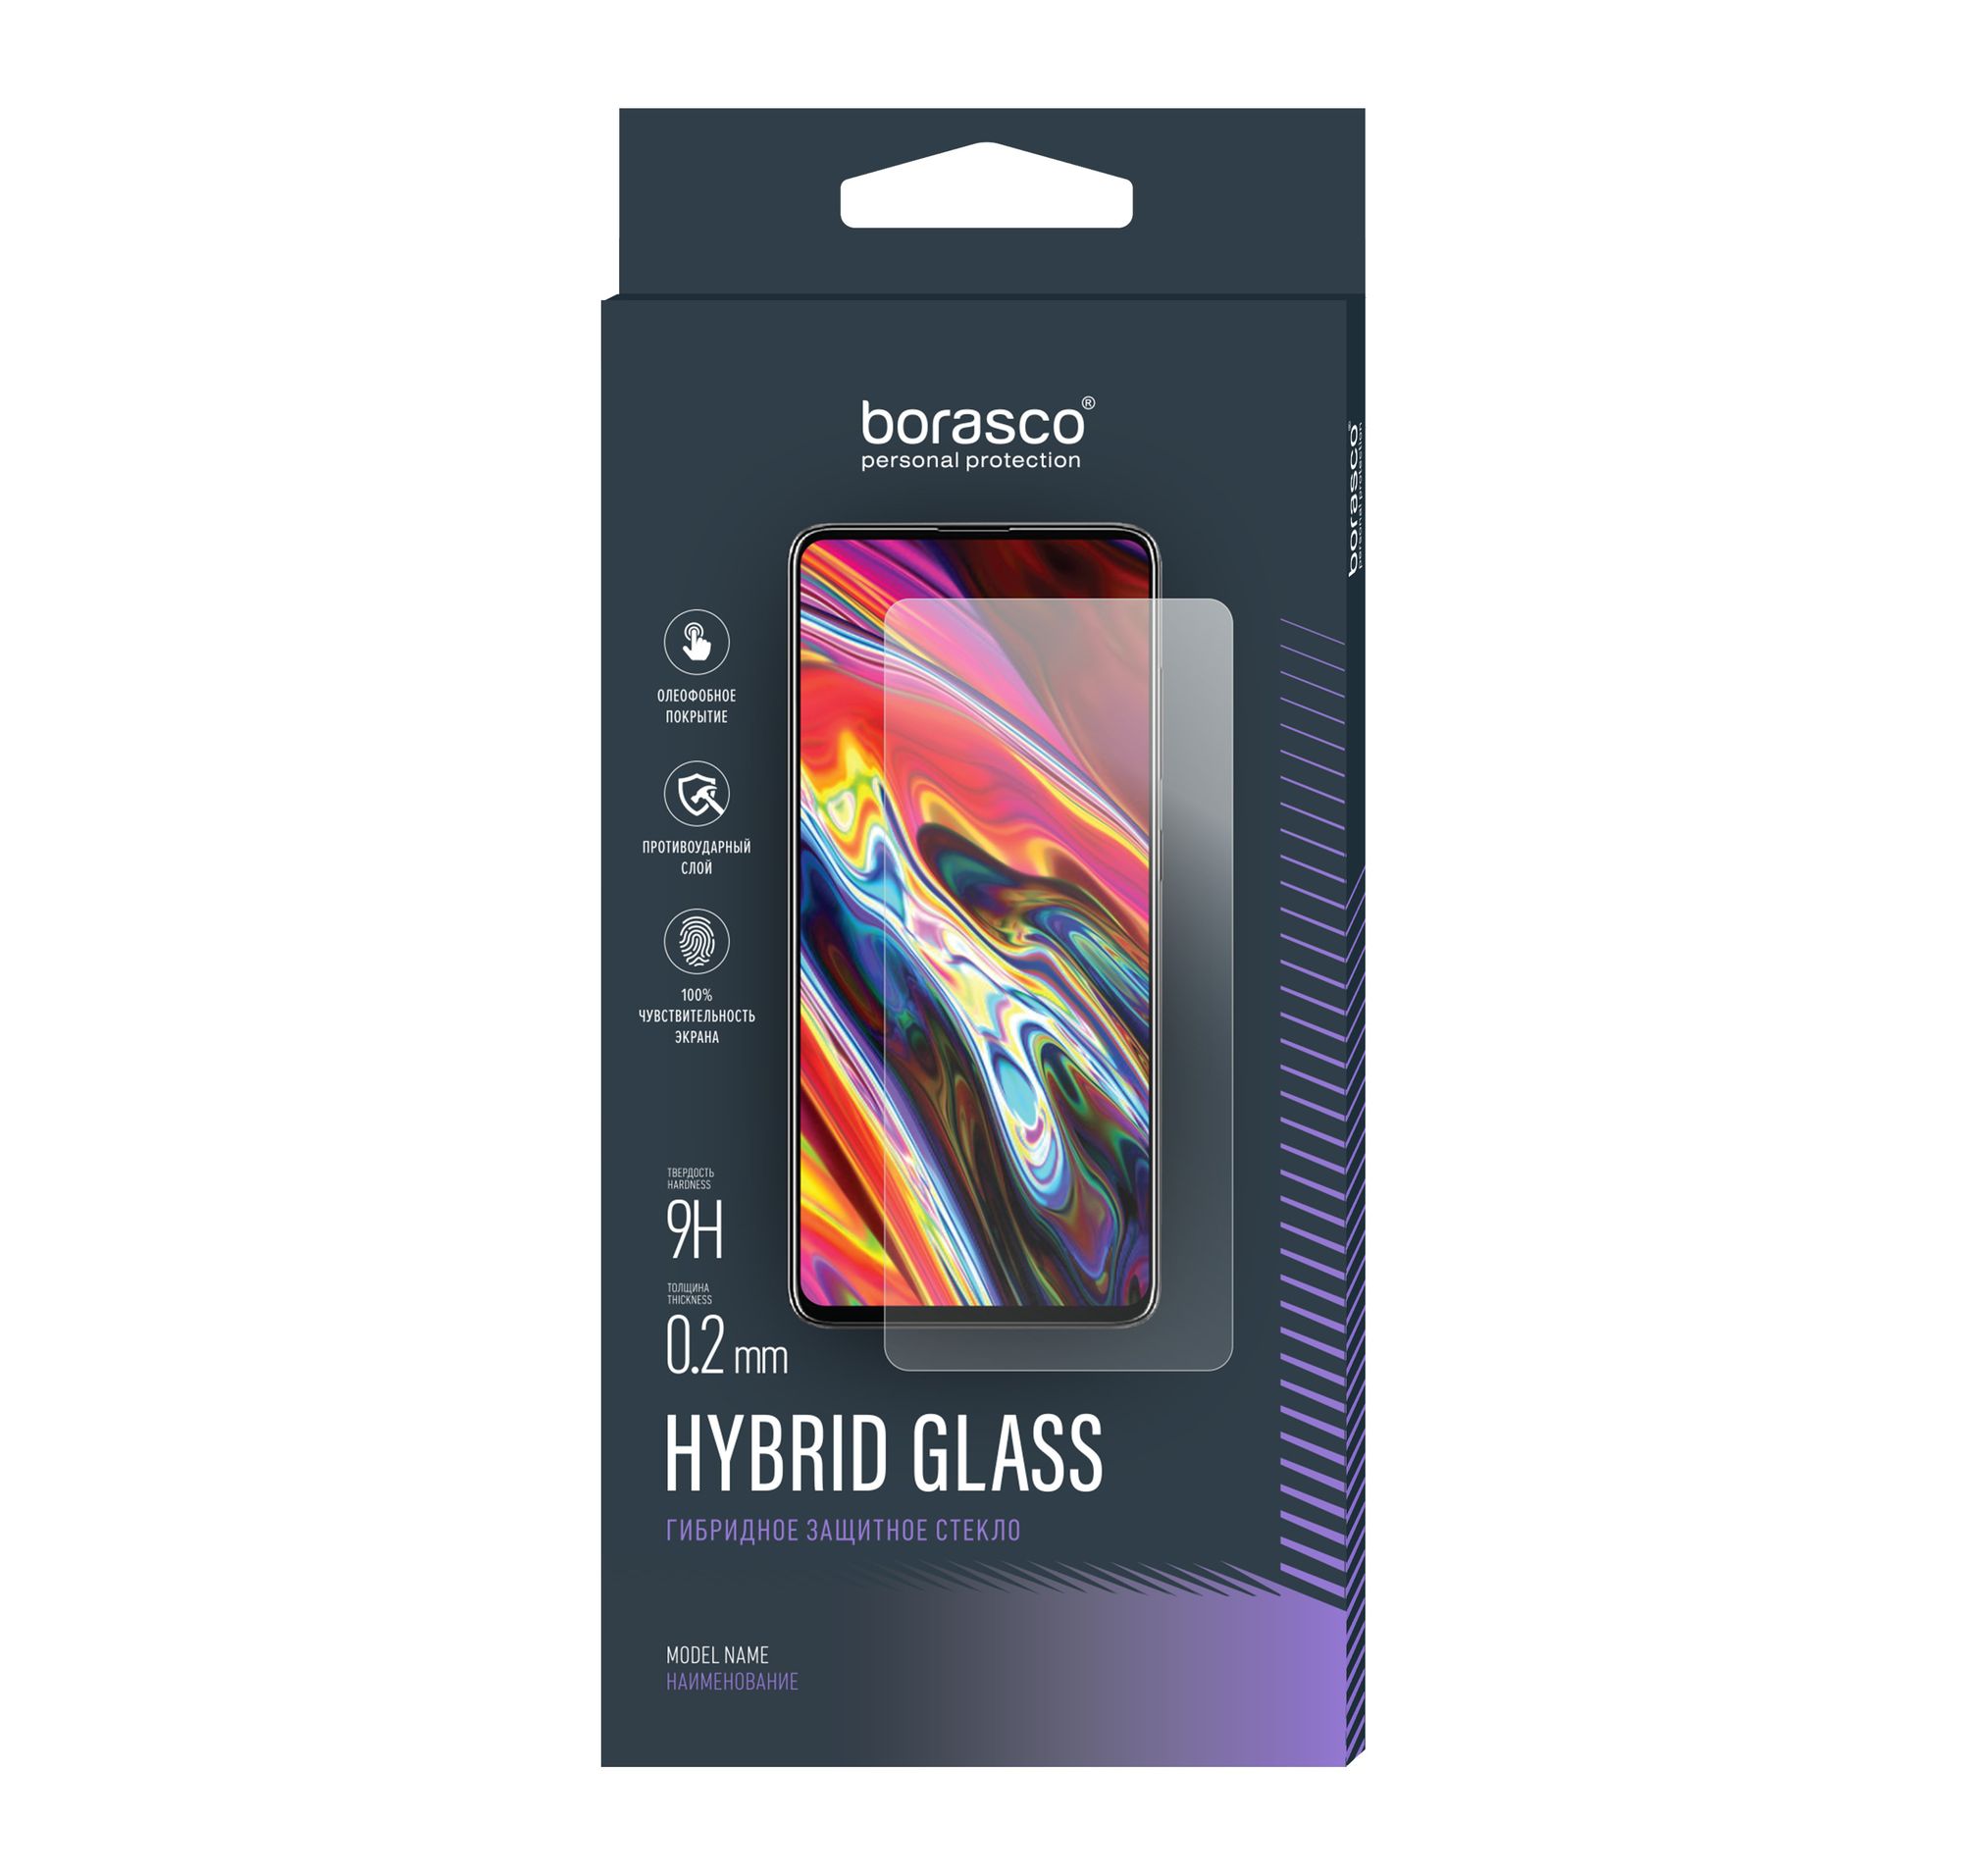 Стекло защитное Hybrid Glass VSP 0,26 мм для Huawei P9 Lite 100% оригинальный аккумулятор hb366481ecw для huawei p9 p9 lite honor 8 p10 lite y6 ii p8 lite 2017 p20 lite honor 5c ascend p9